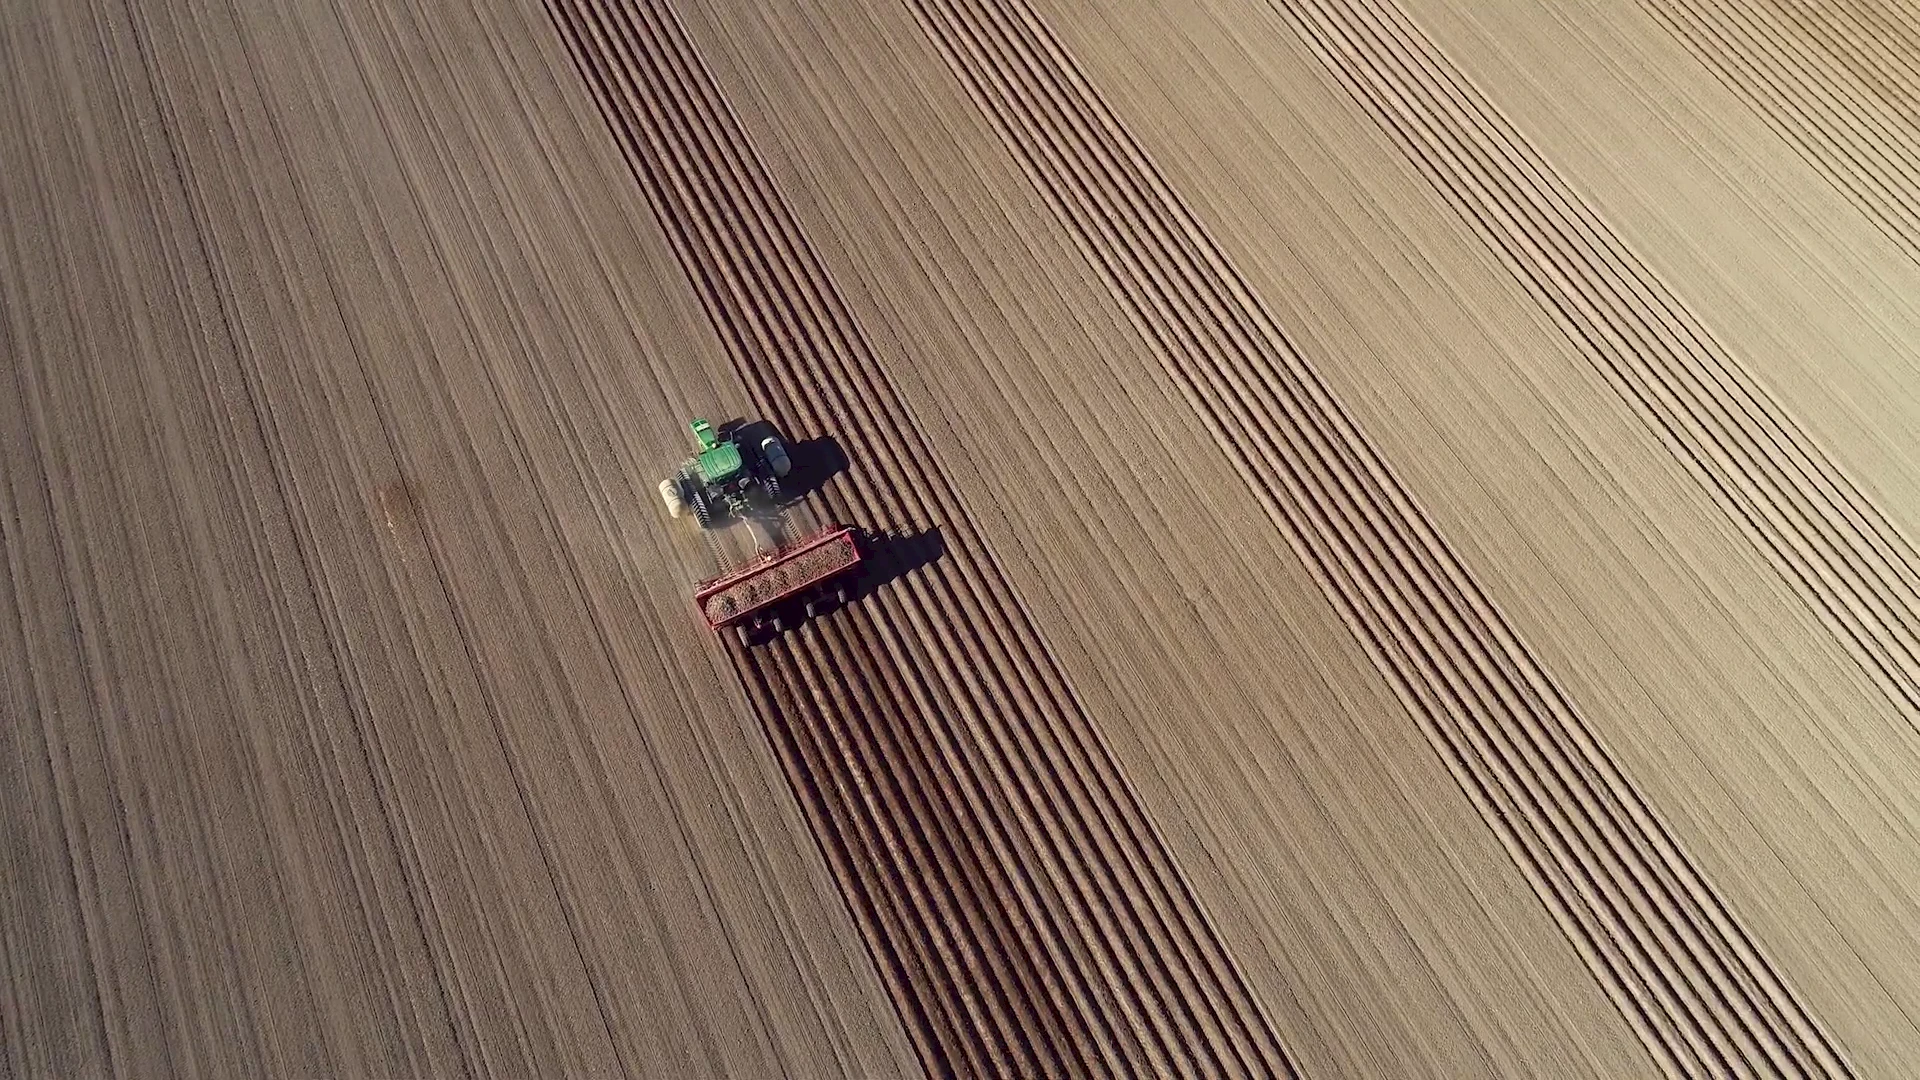 A potato field being plowed.